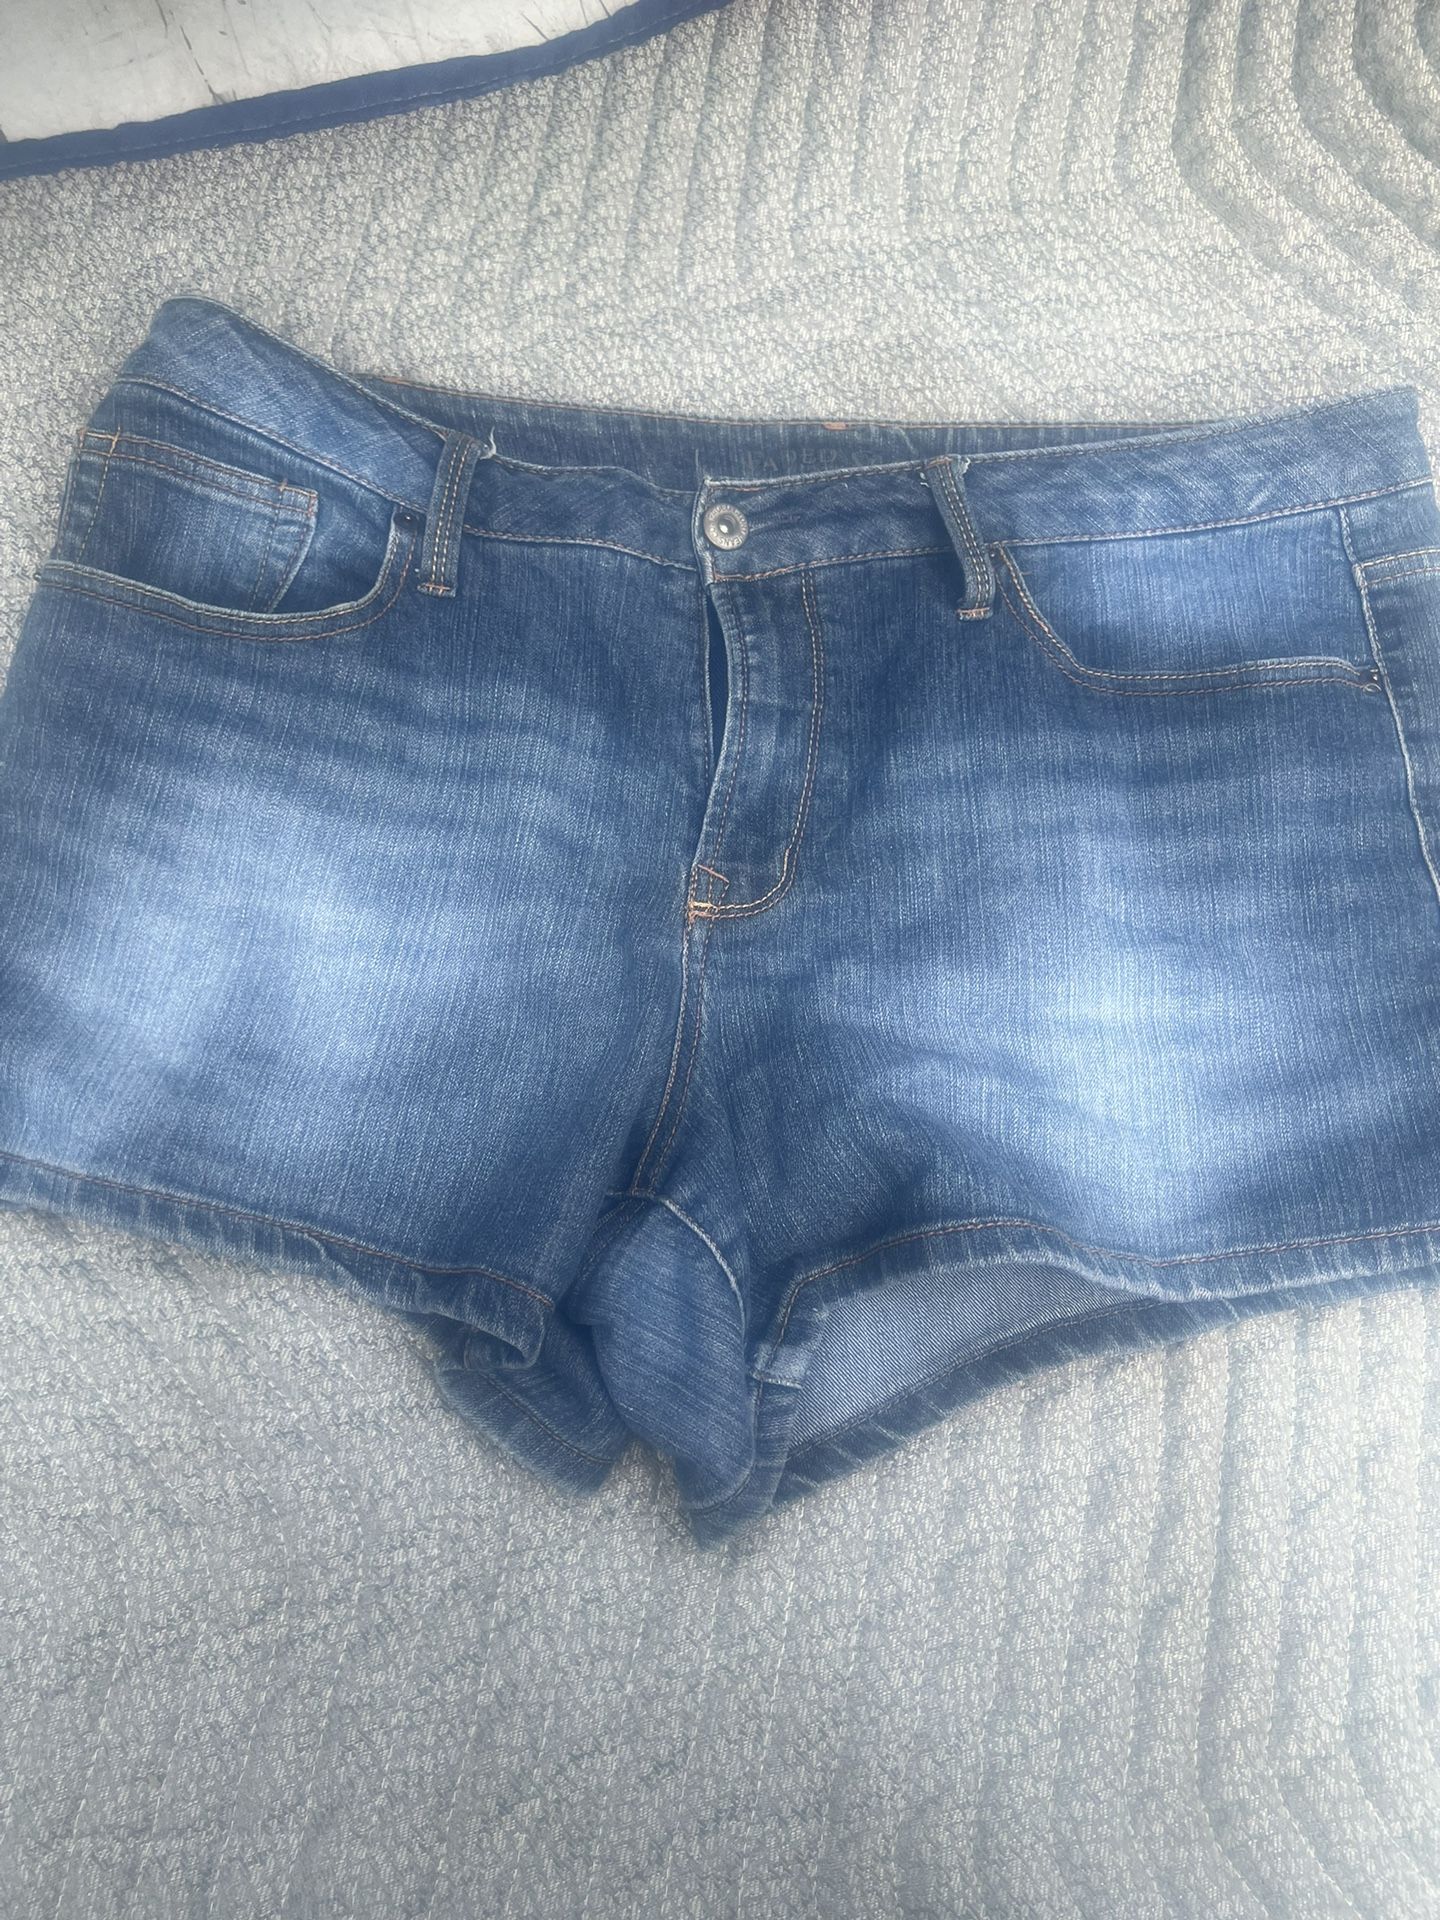 Woman’s Jean Shorts Size 16